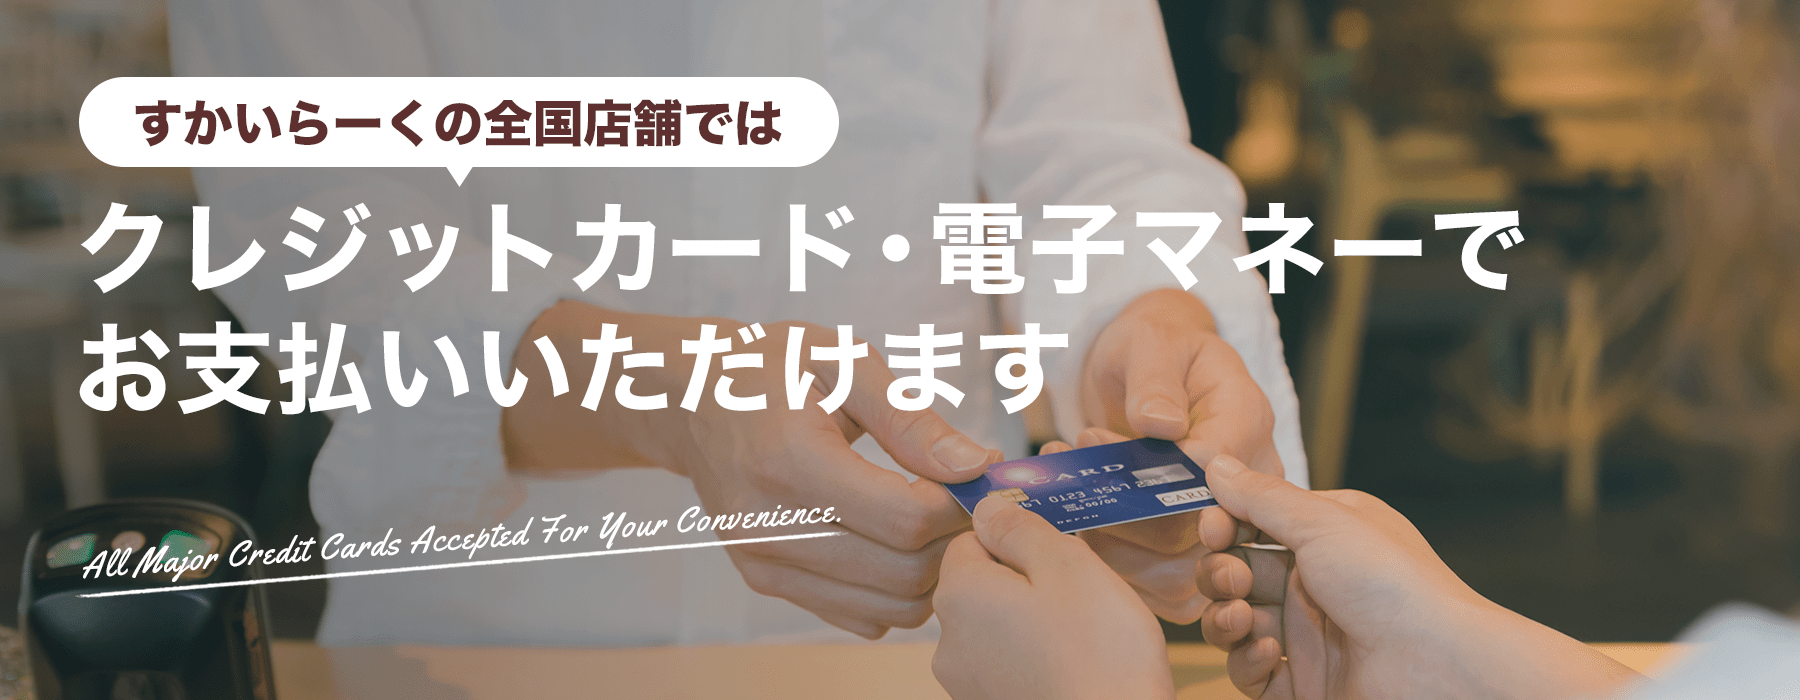 雲雀（すかいらーく）您可以在全國各地的商店用信用卡/電子貨幣付款